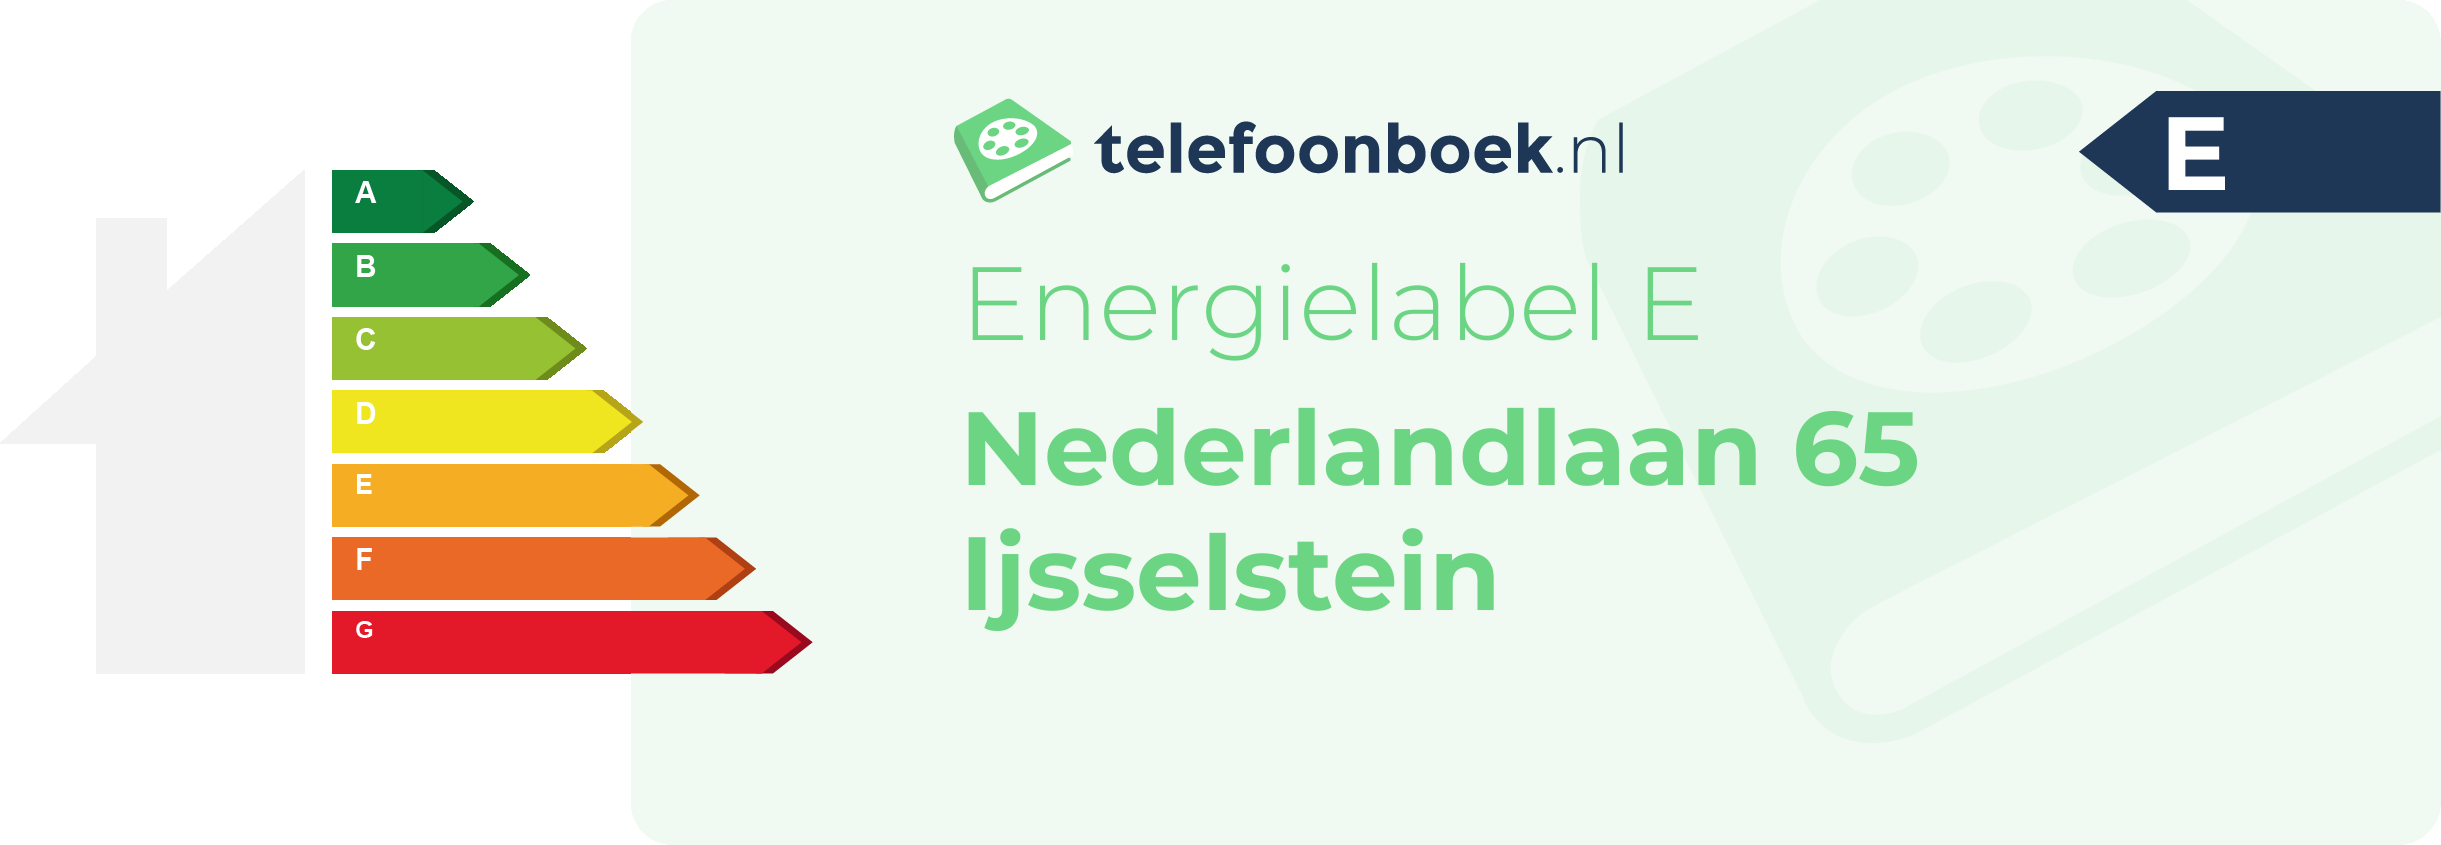 Energielabel Nederlandlaan 65 Ijsselstein